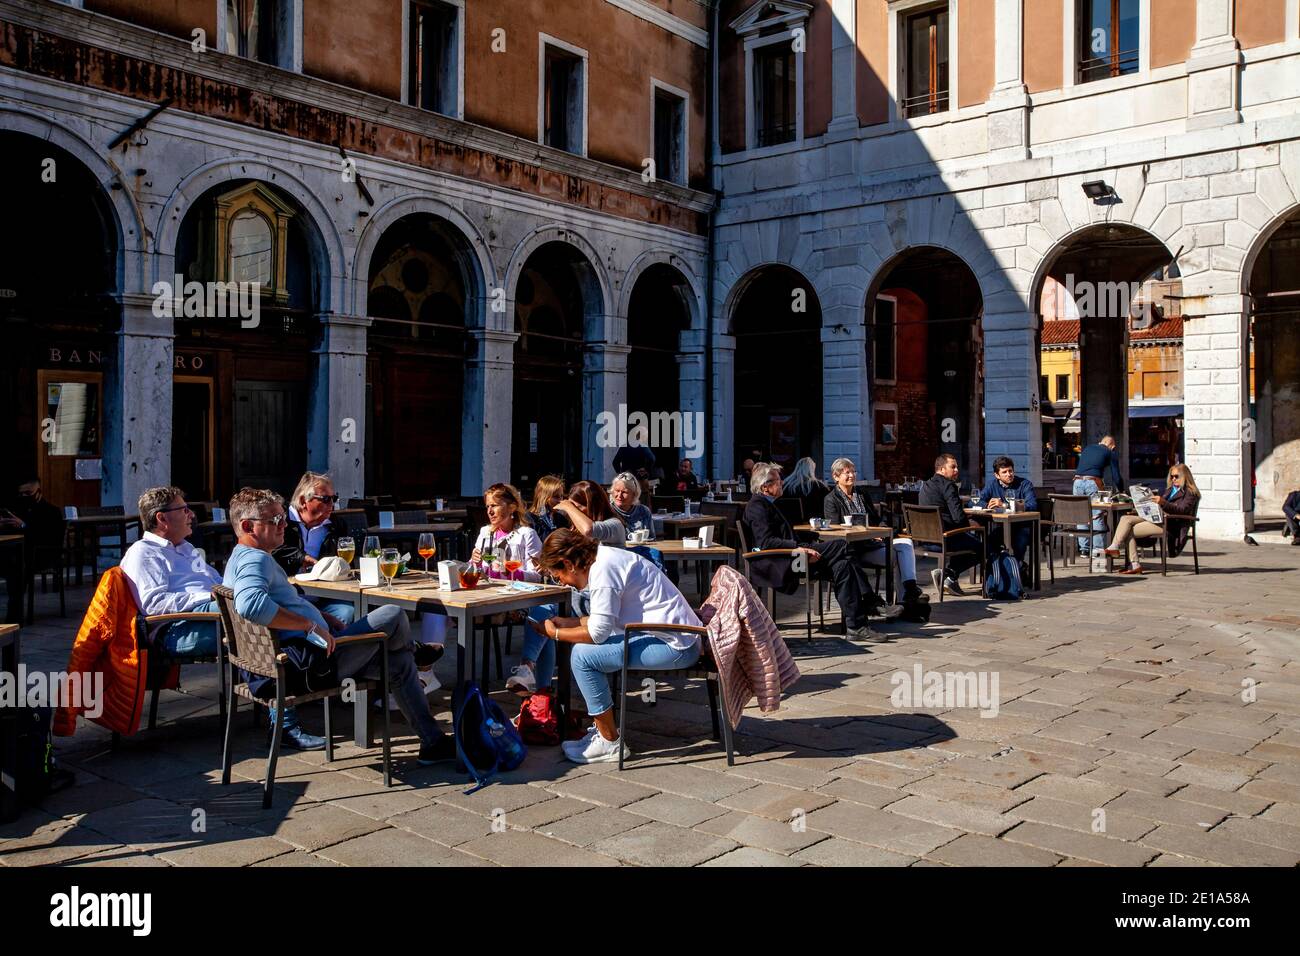 Touristes/visiteurs se détendant dans le soleil à UN café près du pont du Rialto, Venise, Italie. Banque D'Images